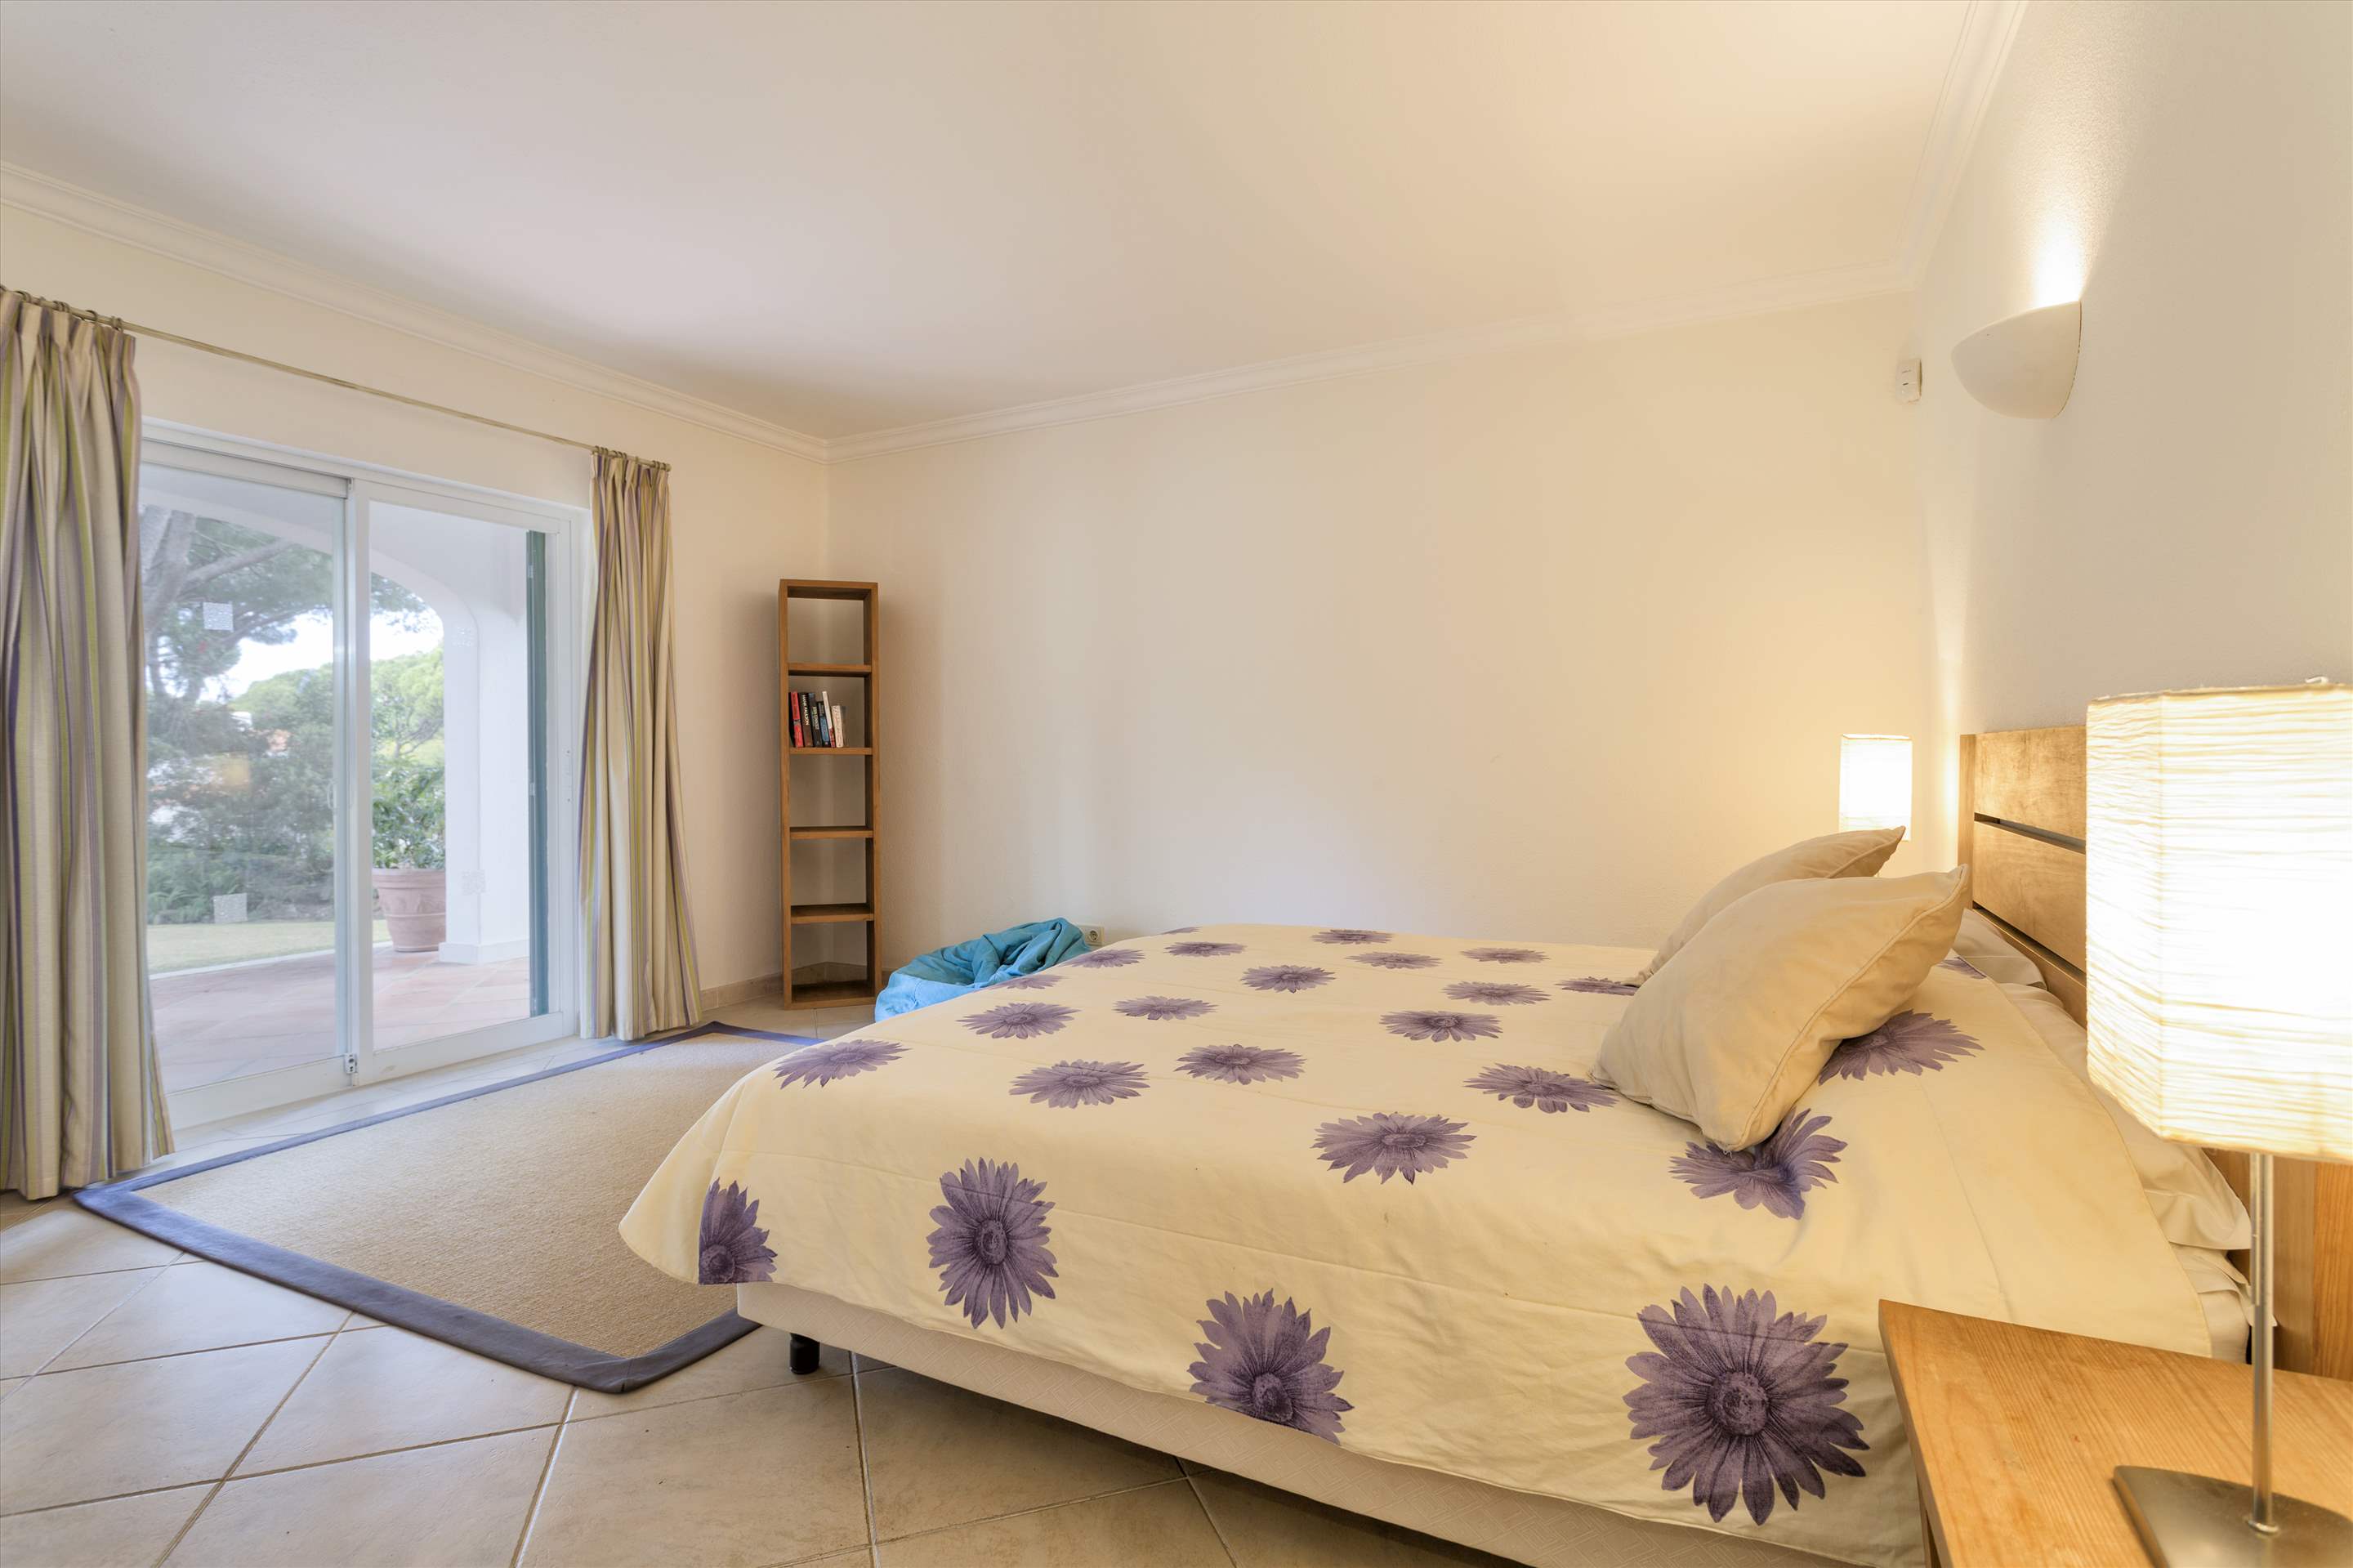 Villa Rosemaria, 5 Bedrooms, 5 bedroom villa in Vale do Lobo, Algarve Photo #10